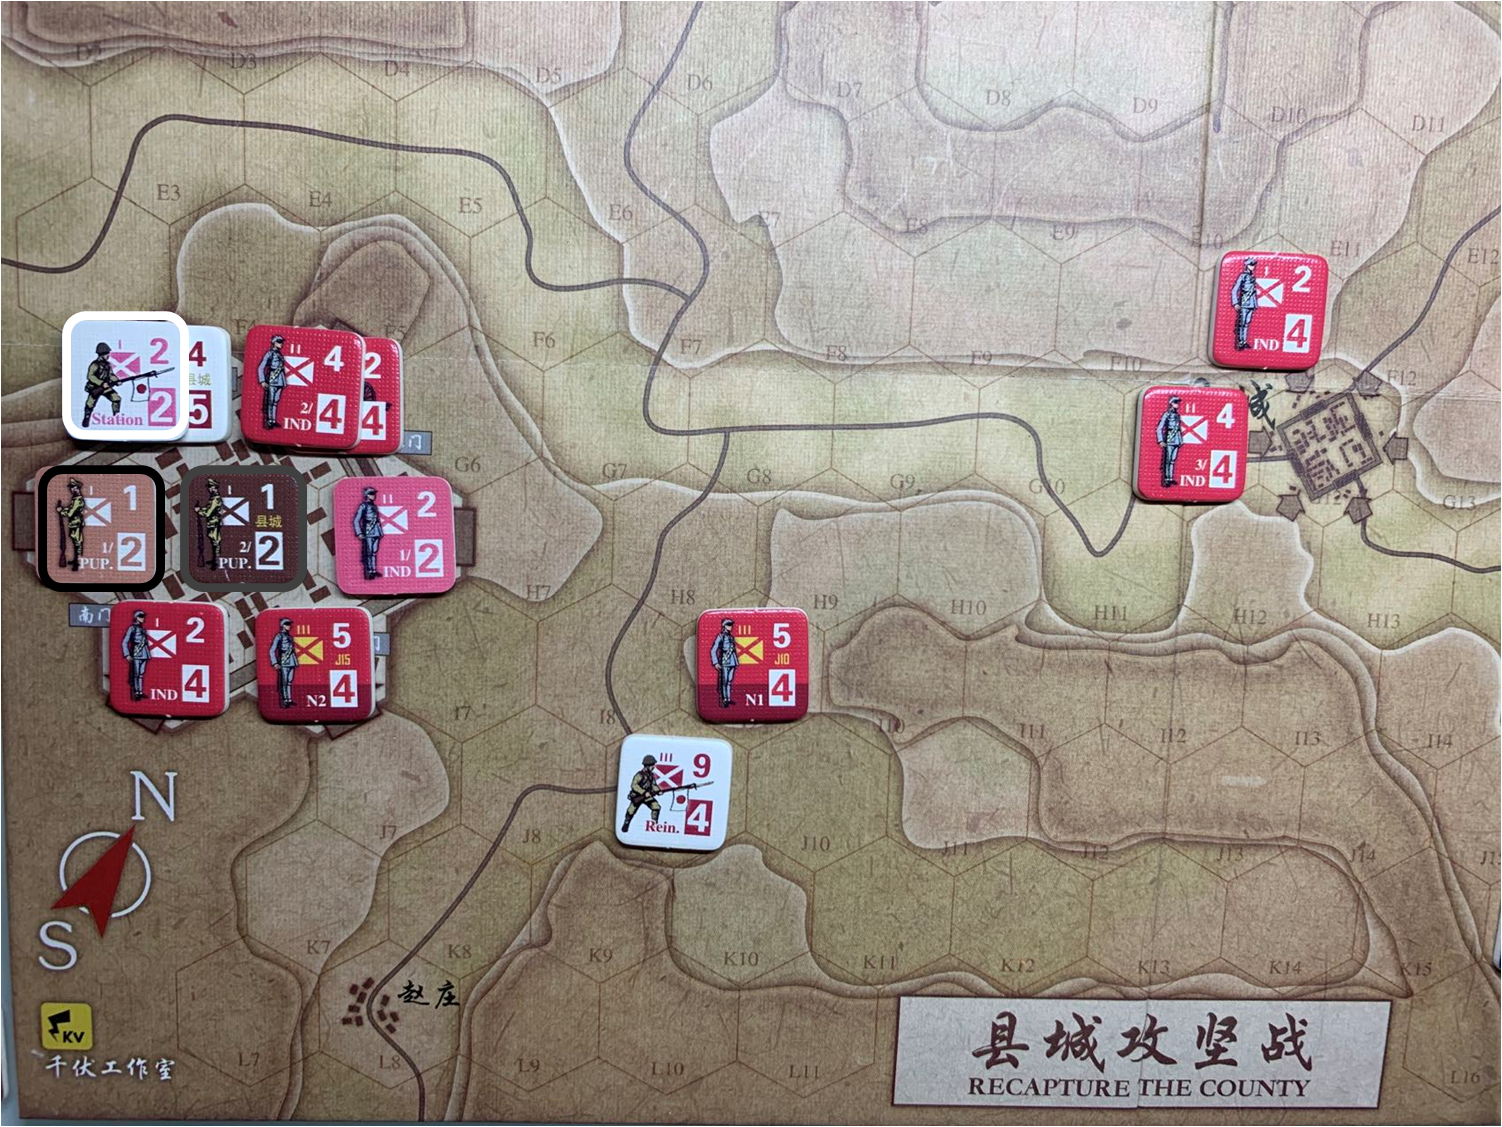 第二回合縣城內日軍Station和偽軍1/PUP.、偽軍2/PUP.守城部隊對於移動命令5的執行結果